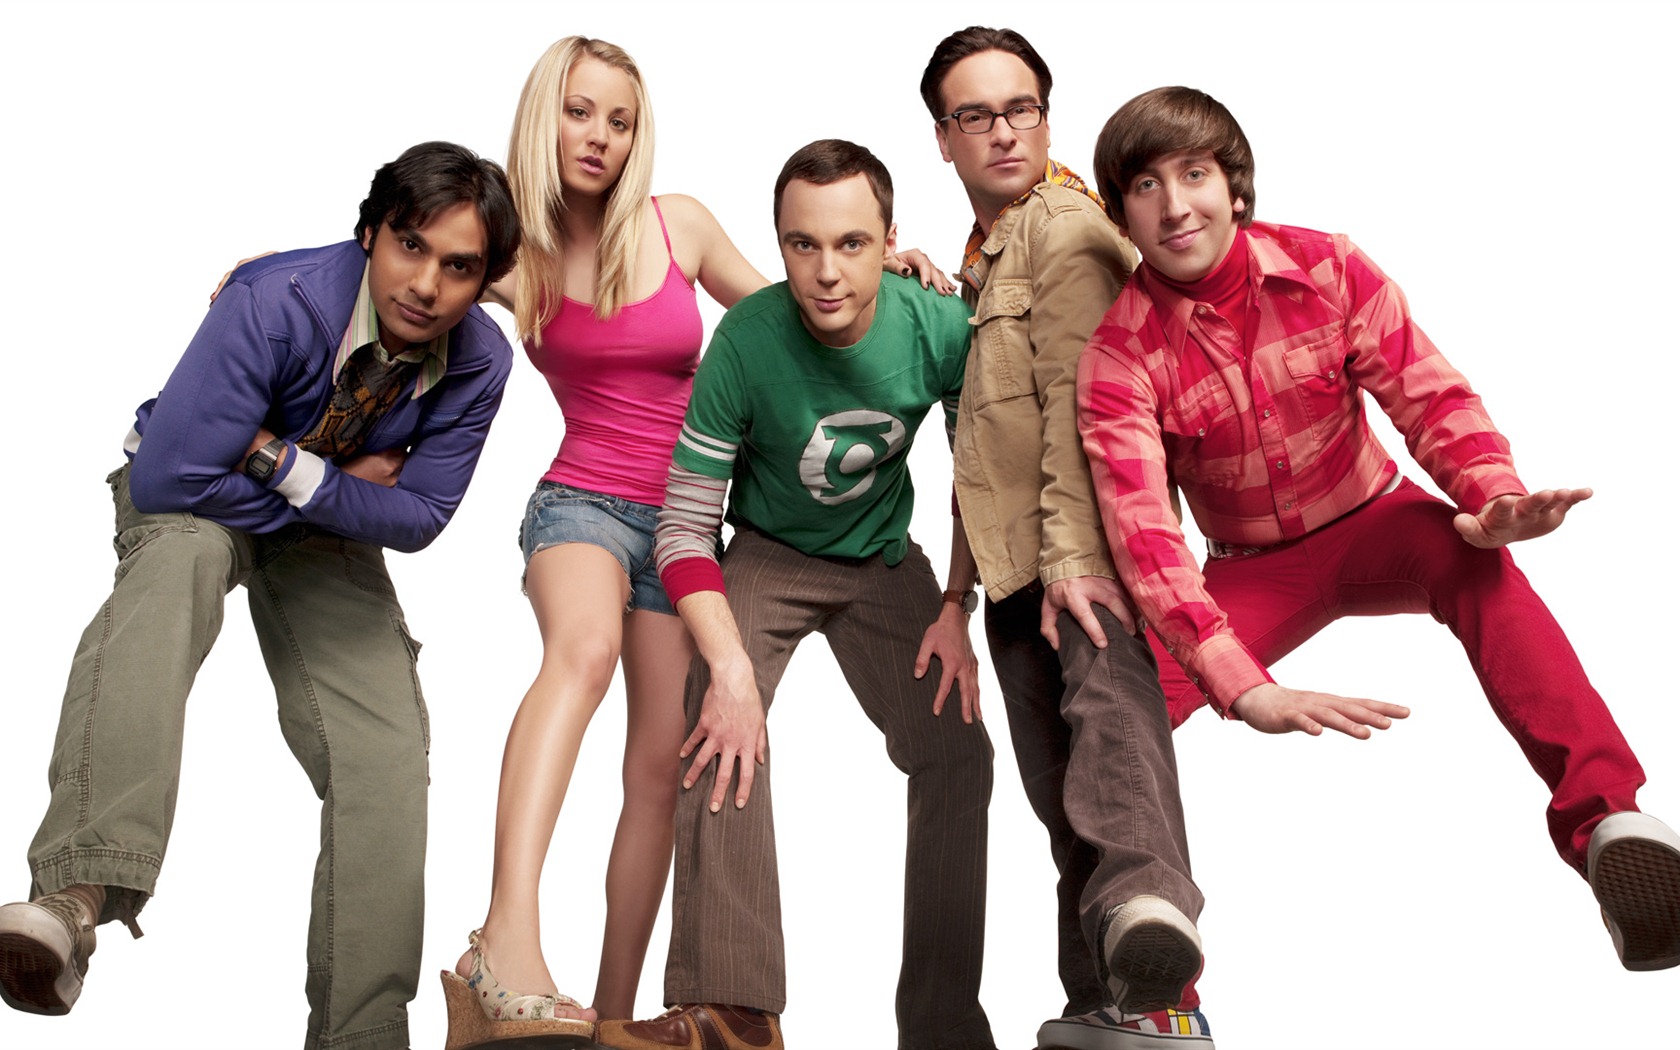 The Big Bang Theory 生活大爆炸 电视剧高清壁纸25 - 1680x1050